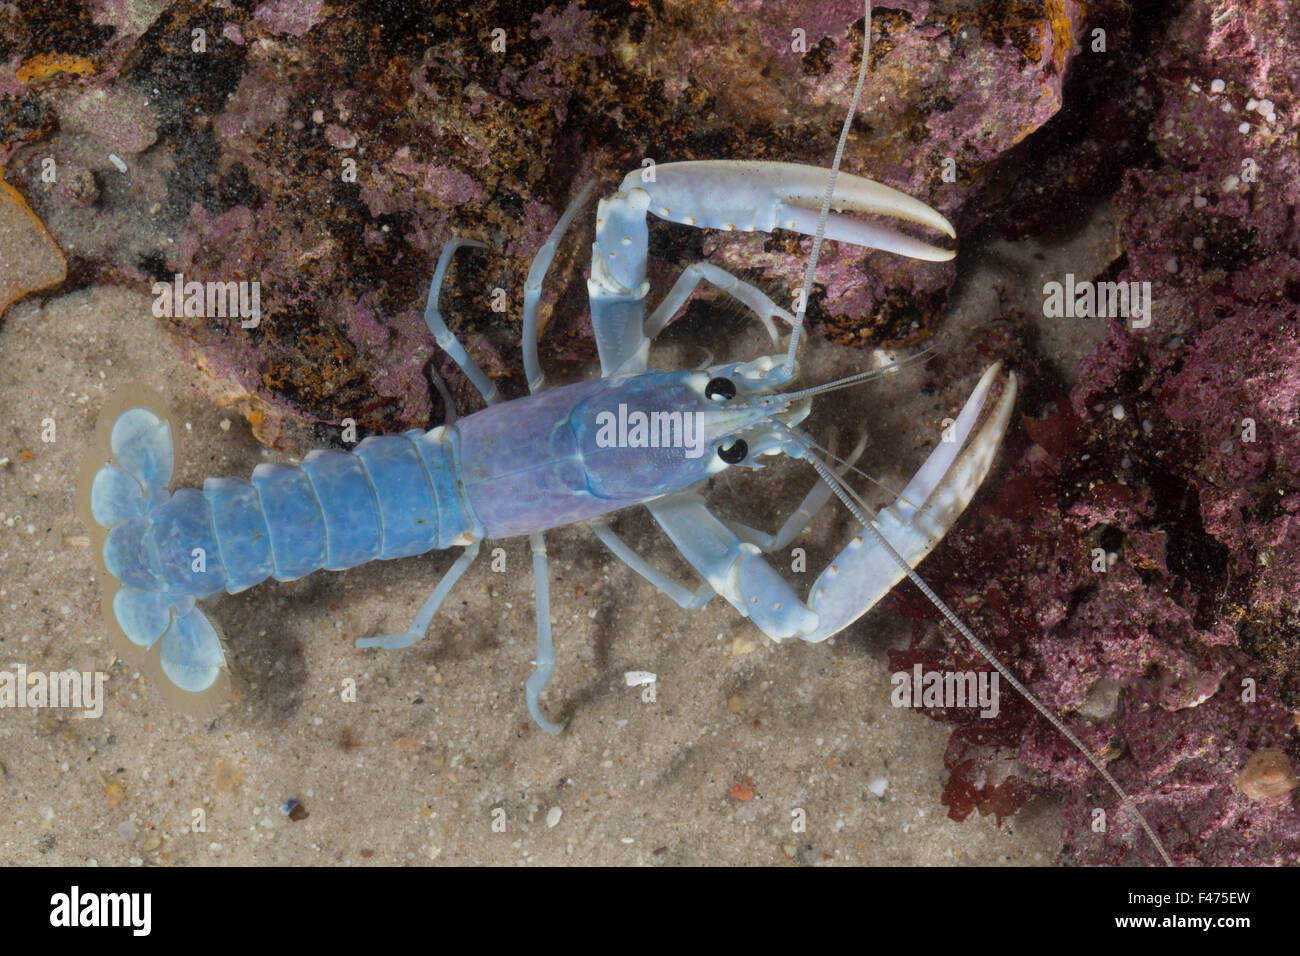 Common lobster, European clawed lobster, Maine lobster, Europäischer Hummer, Homarus gammarus, Homarus vulgaris Stock Photo